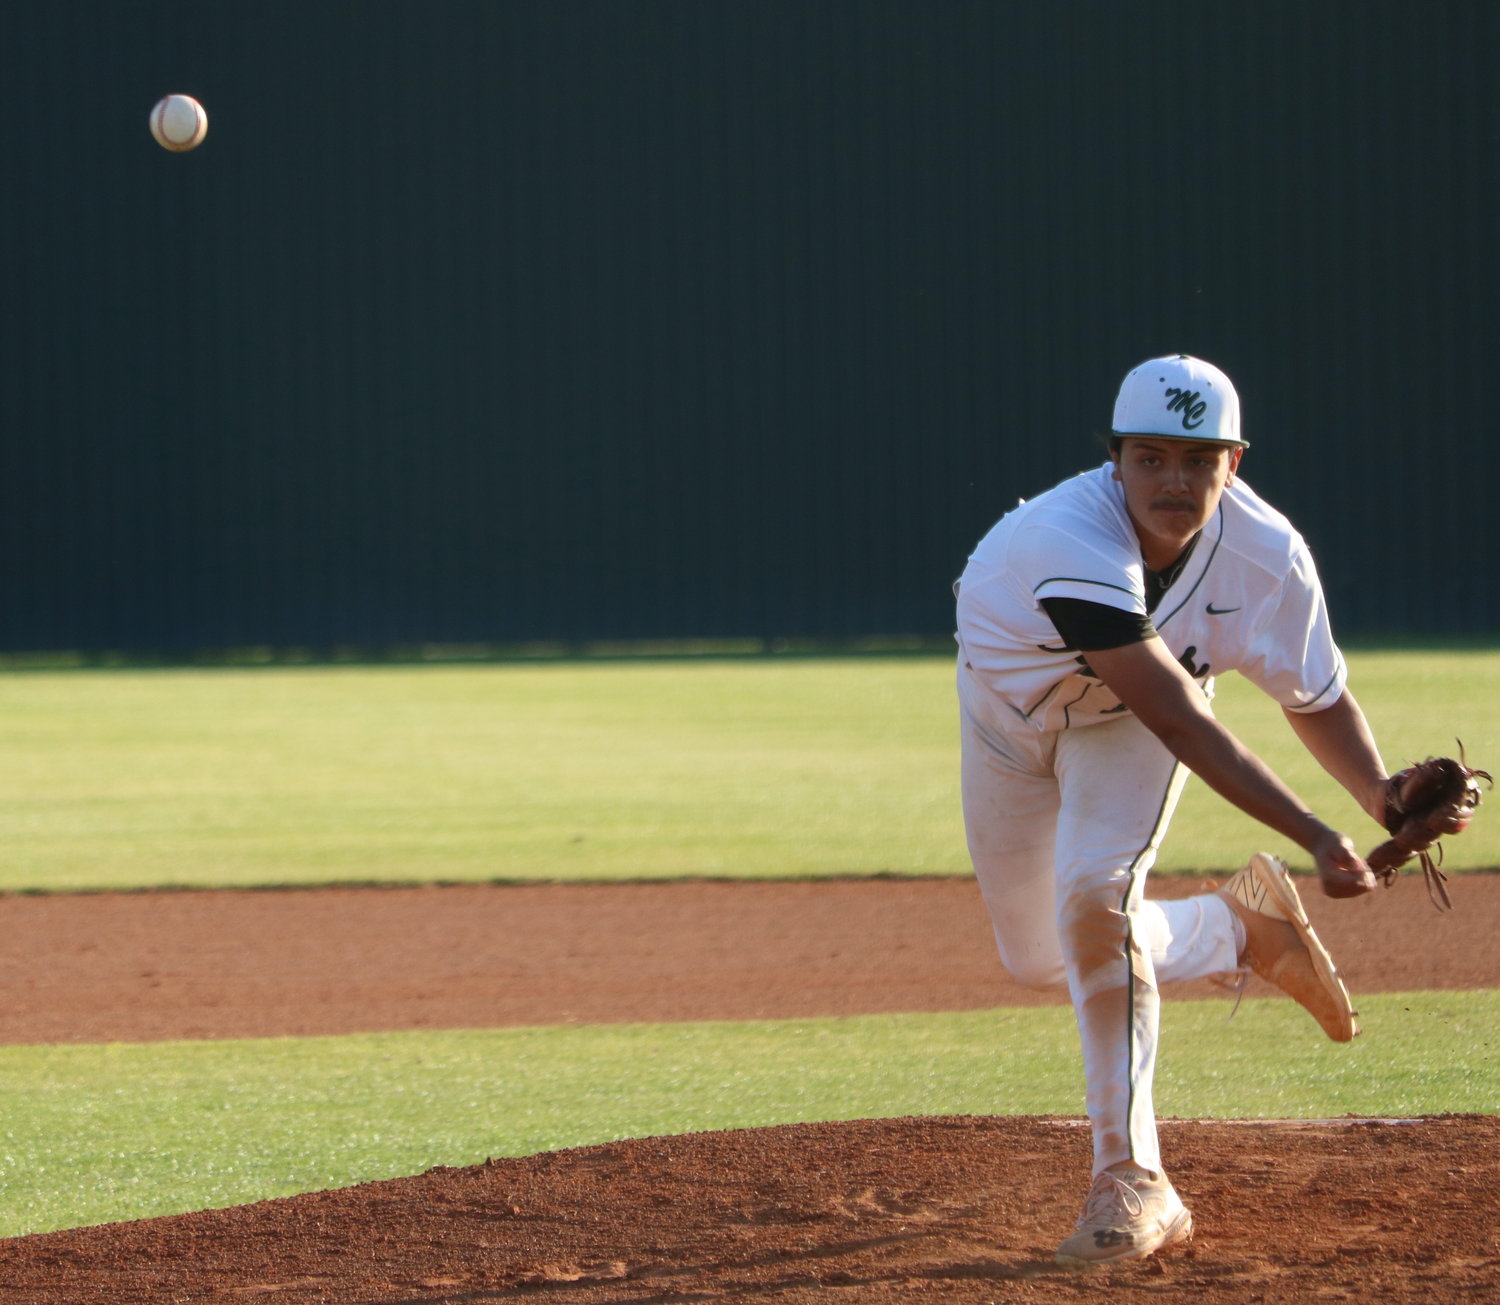 Jason Hinojosa pitches during Tuesday’s game between Katy and Mayde Creek at the Mayde Creek baseball field.